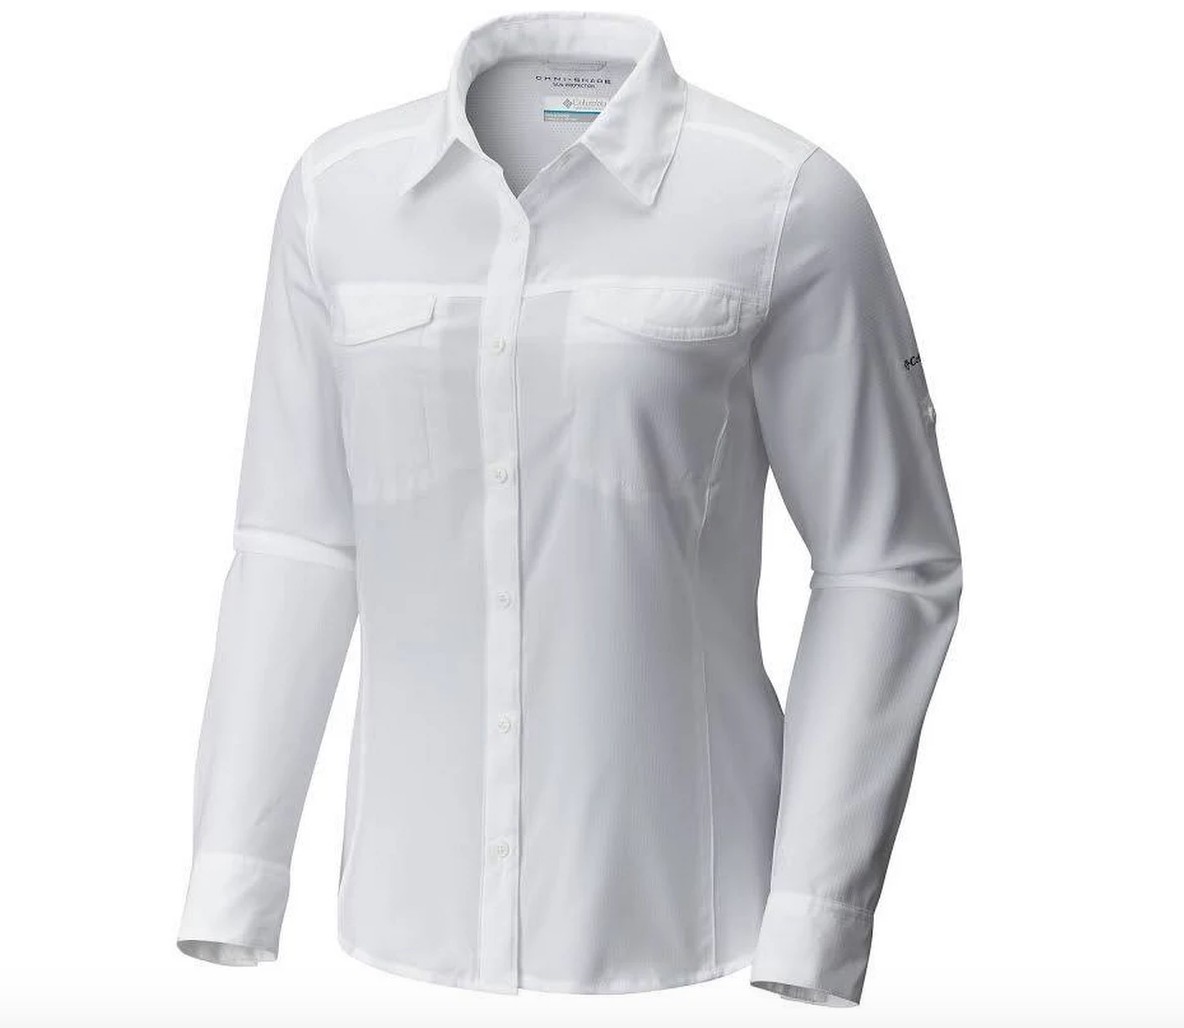 Columbia Silver Ridge Utility Grey Women's Long Sleeve T-Shirt